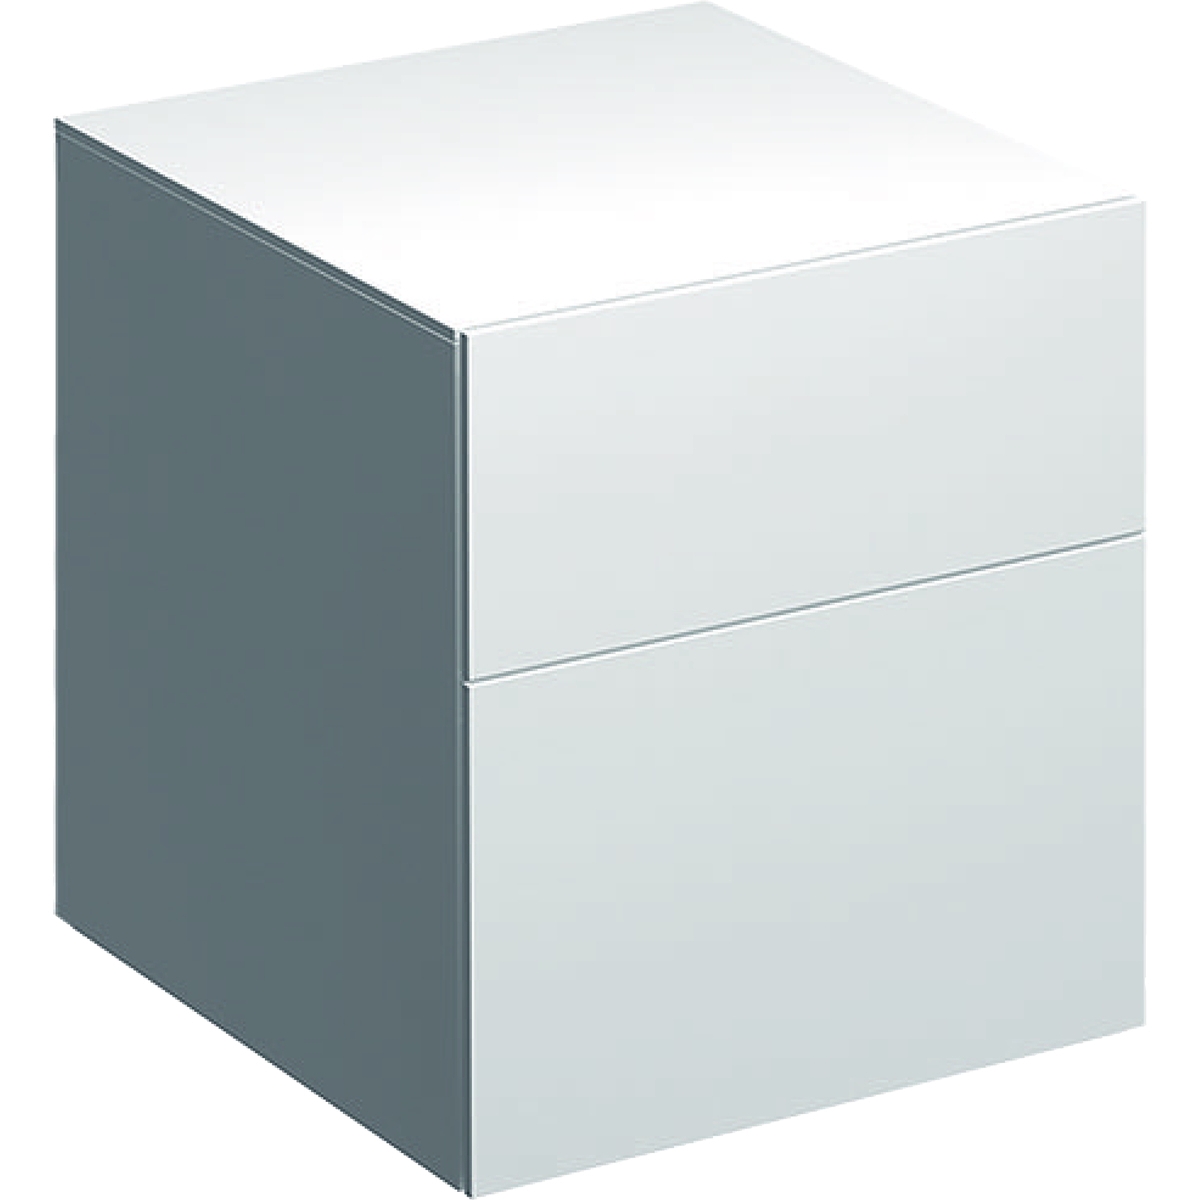 Dulap suspendat Geberit Xeno2 45×46.2x51cm cu doua sertare alb lucios Geberit imagine bricosteel.ro